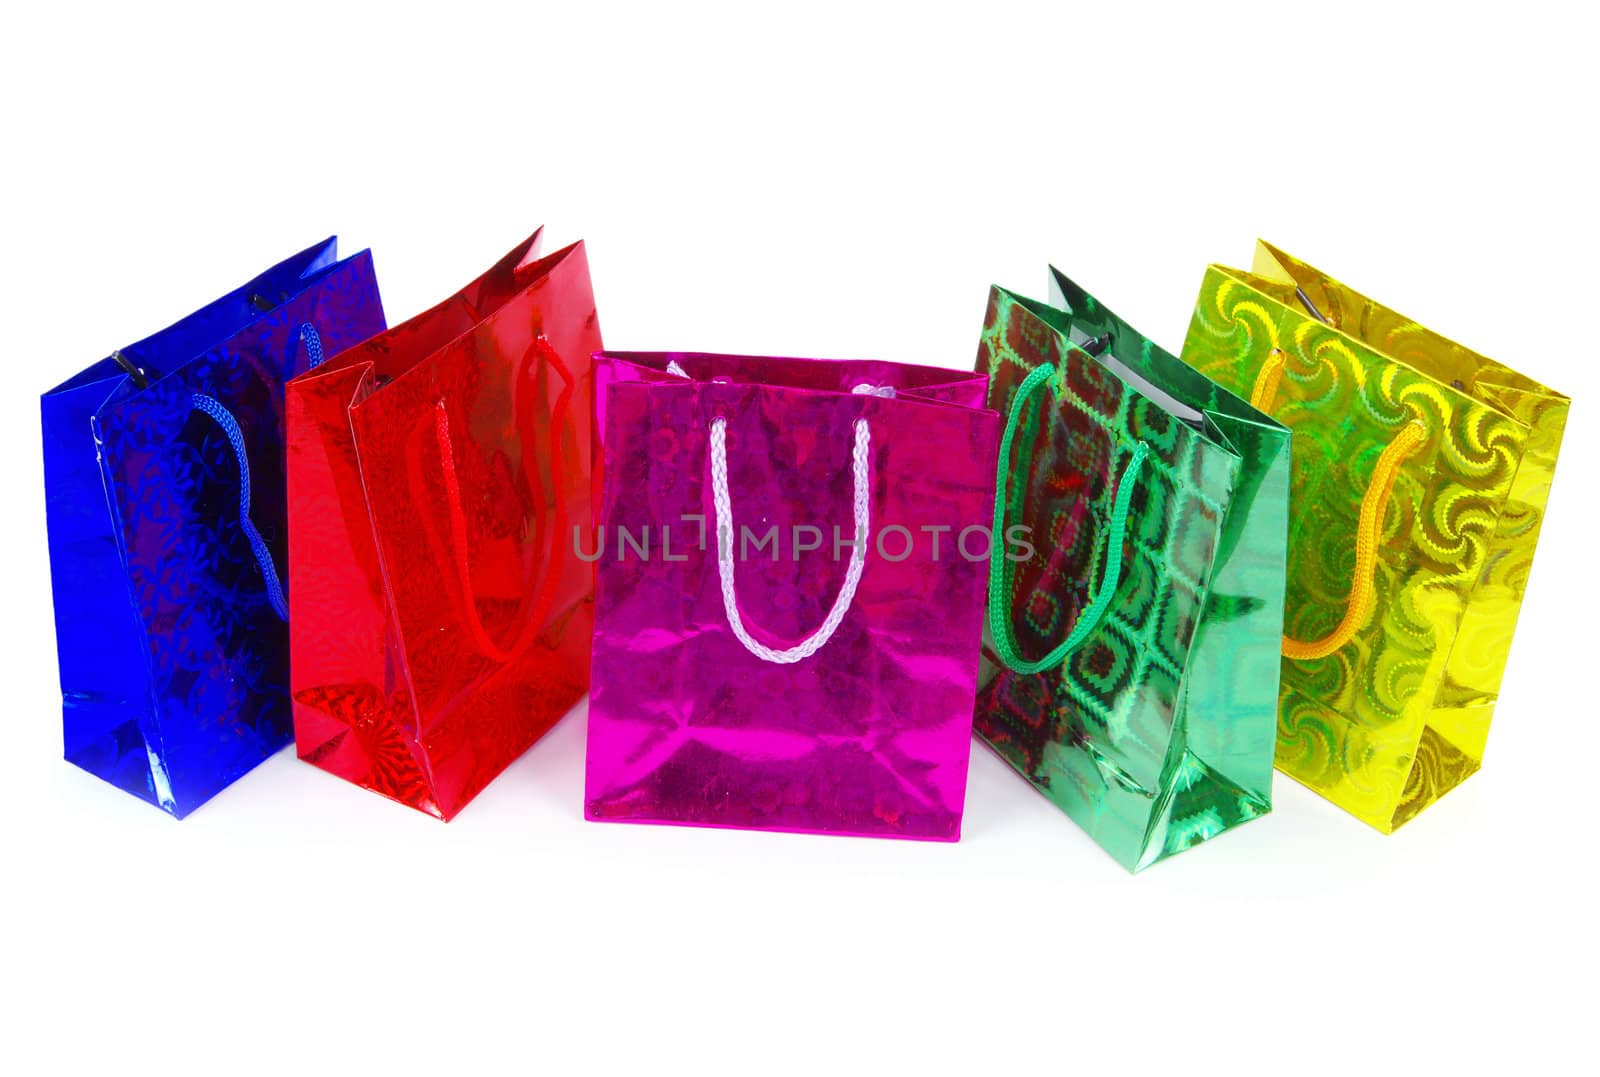  shopping bags  by Pakhnyushchyy